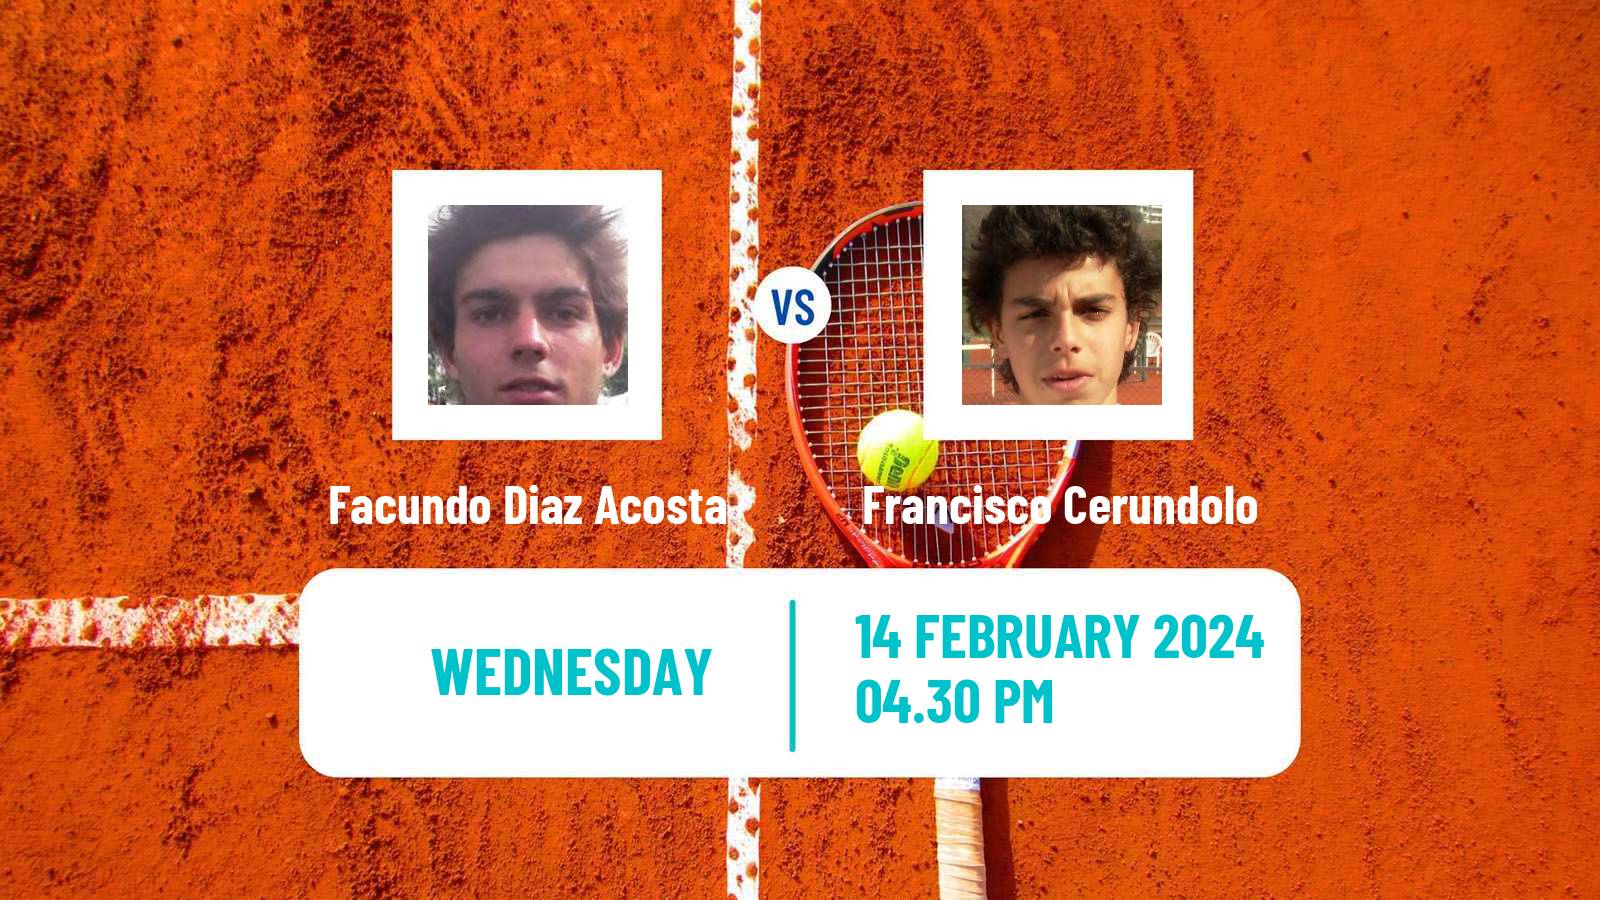 Tennis ATP Buenos Aires Facundo Diaz Acosta - Francisco Cerundolo